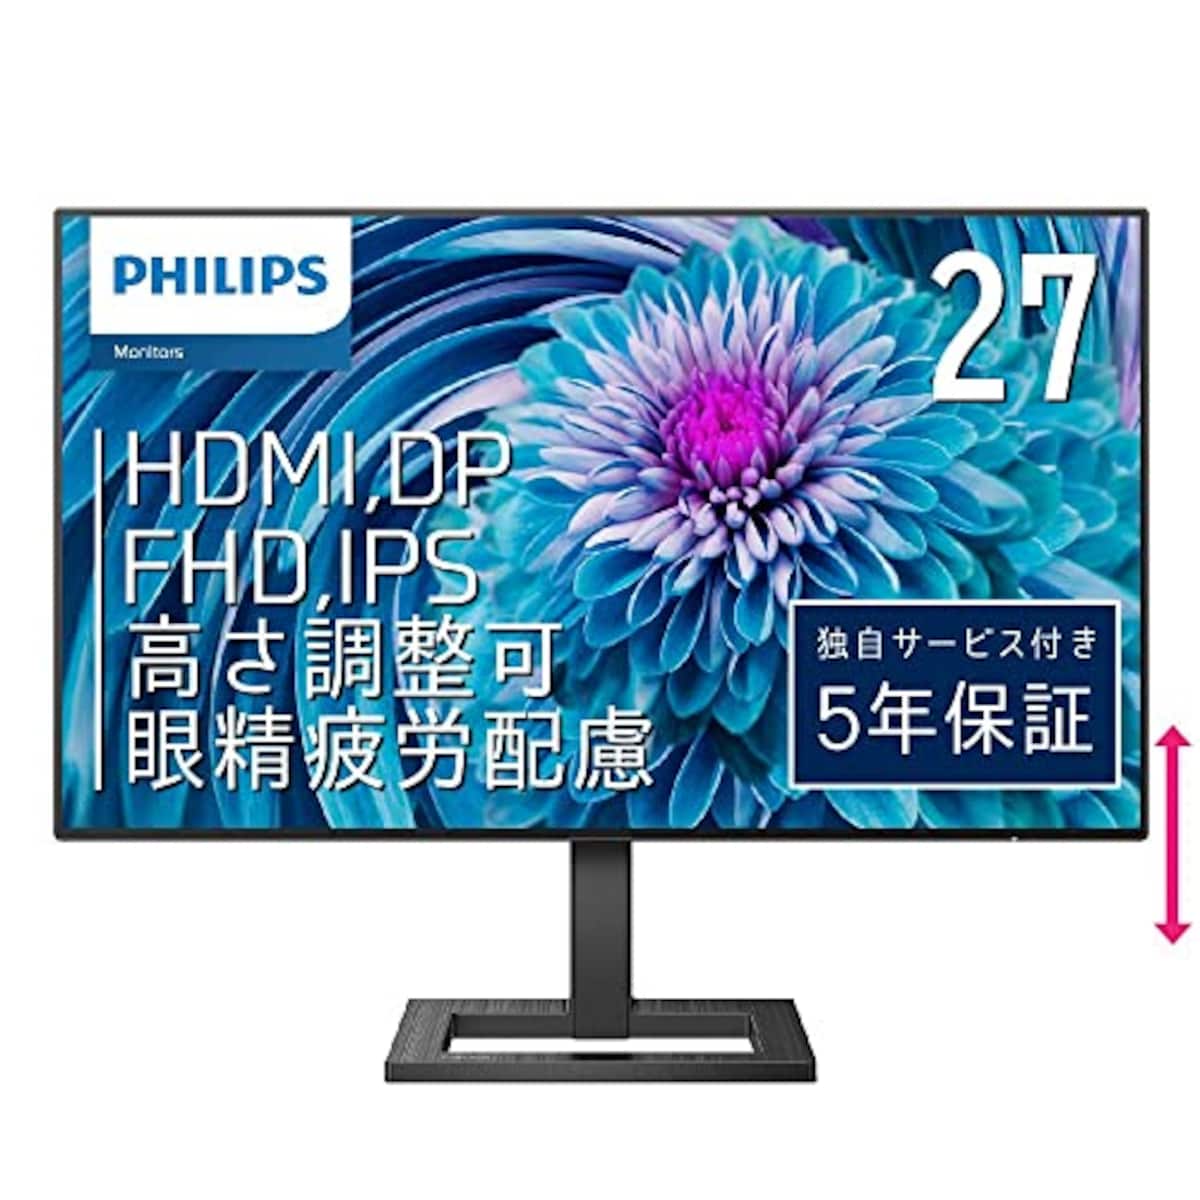 PHILIPS 液晶ディスプレイ PCモニター 272E2FE/11 (27インチ/5年保証/FHD/IPS/D-Sub 15,HDMI,Display Port/昇降・高さ調節/チルト/4面フレームレス/FreeSync(HDMI,DP)ちらつき防止/ブルーライト軽減)画像